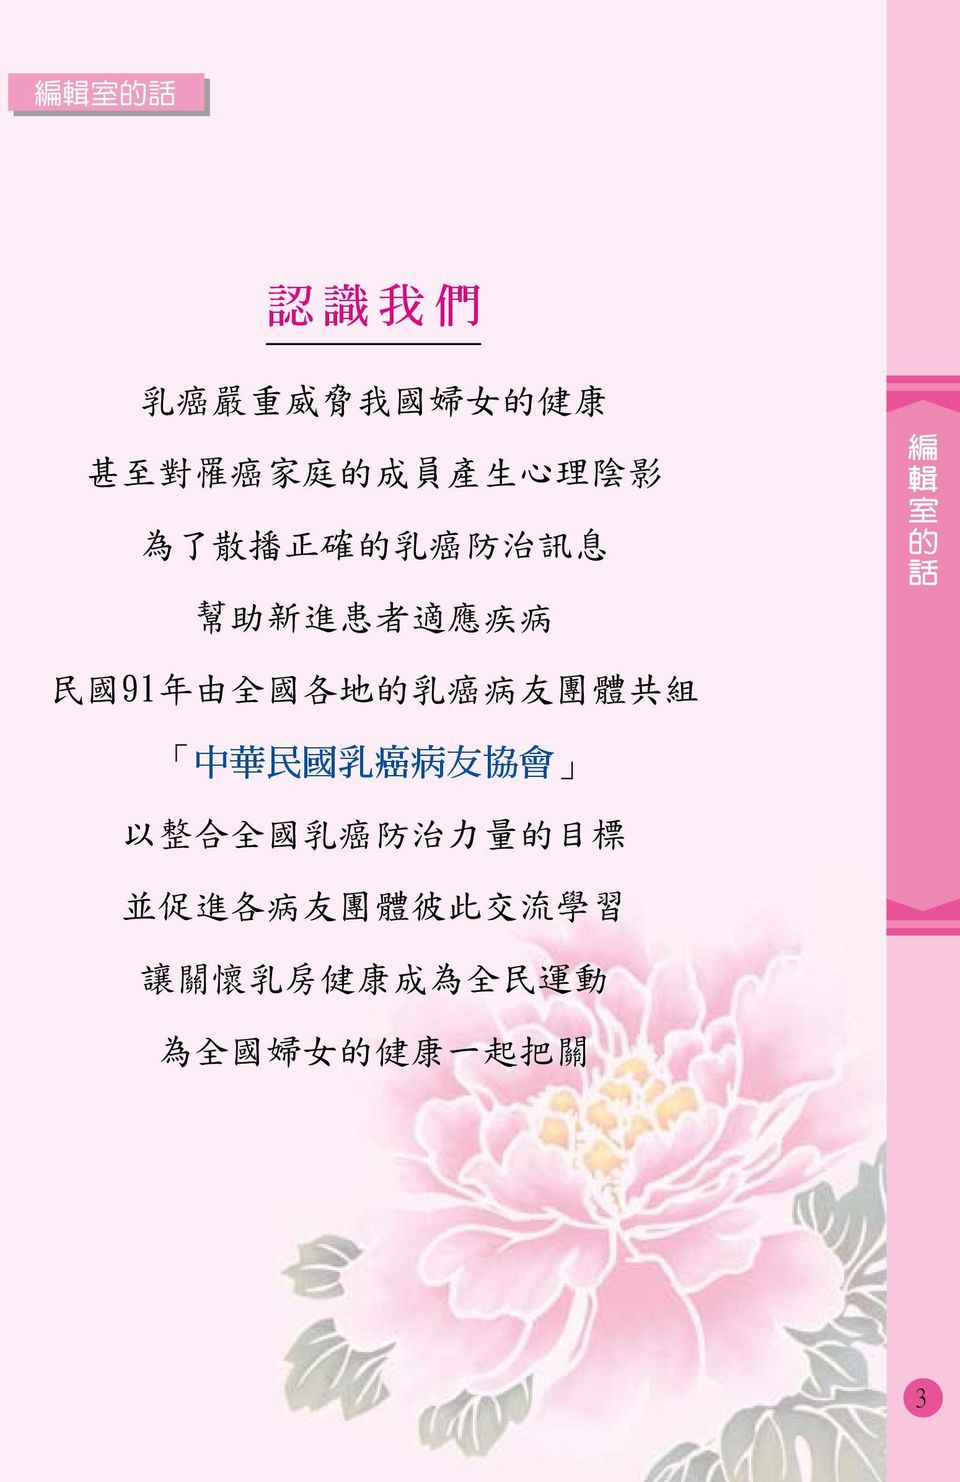 各 地 的 乳 癌 病 友 團 體 共 組 中 華 民 國 乳 癌 病 友 協 會 以 整 合 全 國 乳 癌 防 治 力 量 的 目 標 並 促